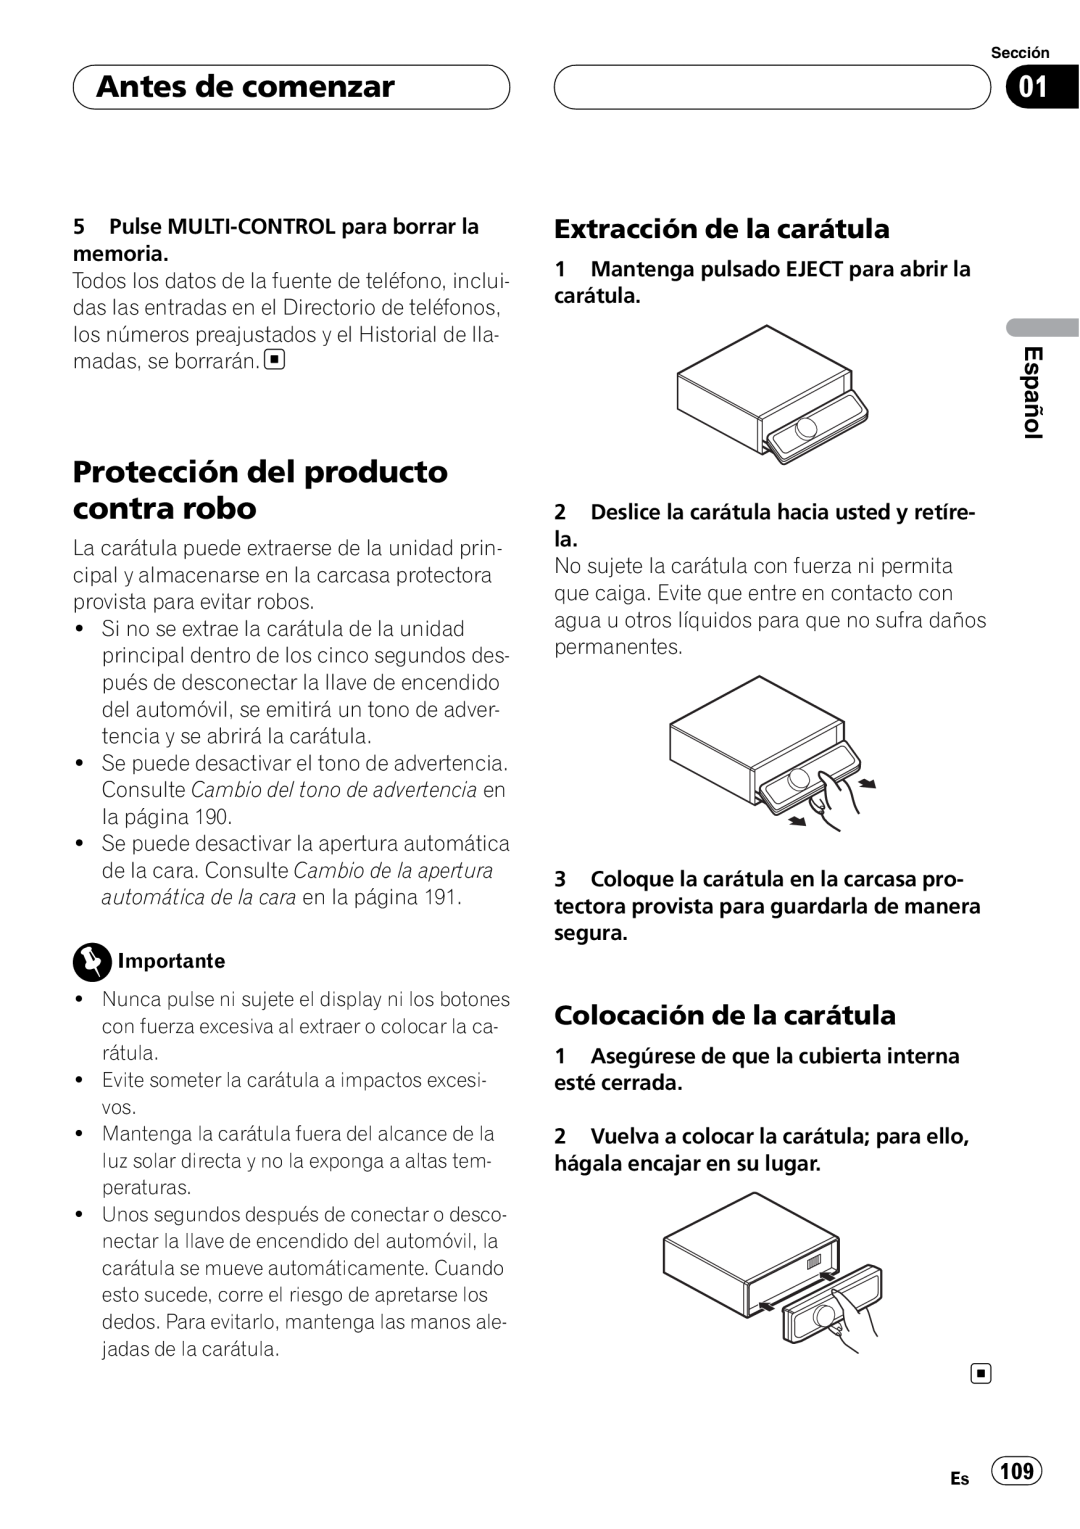 Pioneer DEH-P75BT Protección del producto contra robo, Extracción de la carátula, Colocación de la carátula, Español 